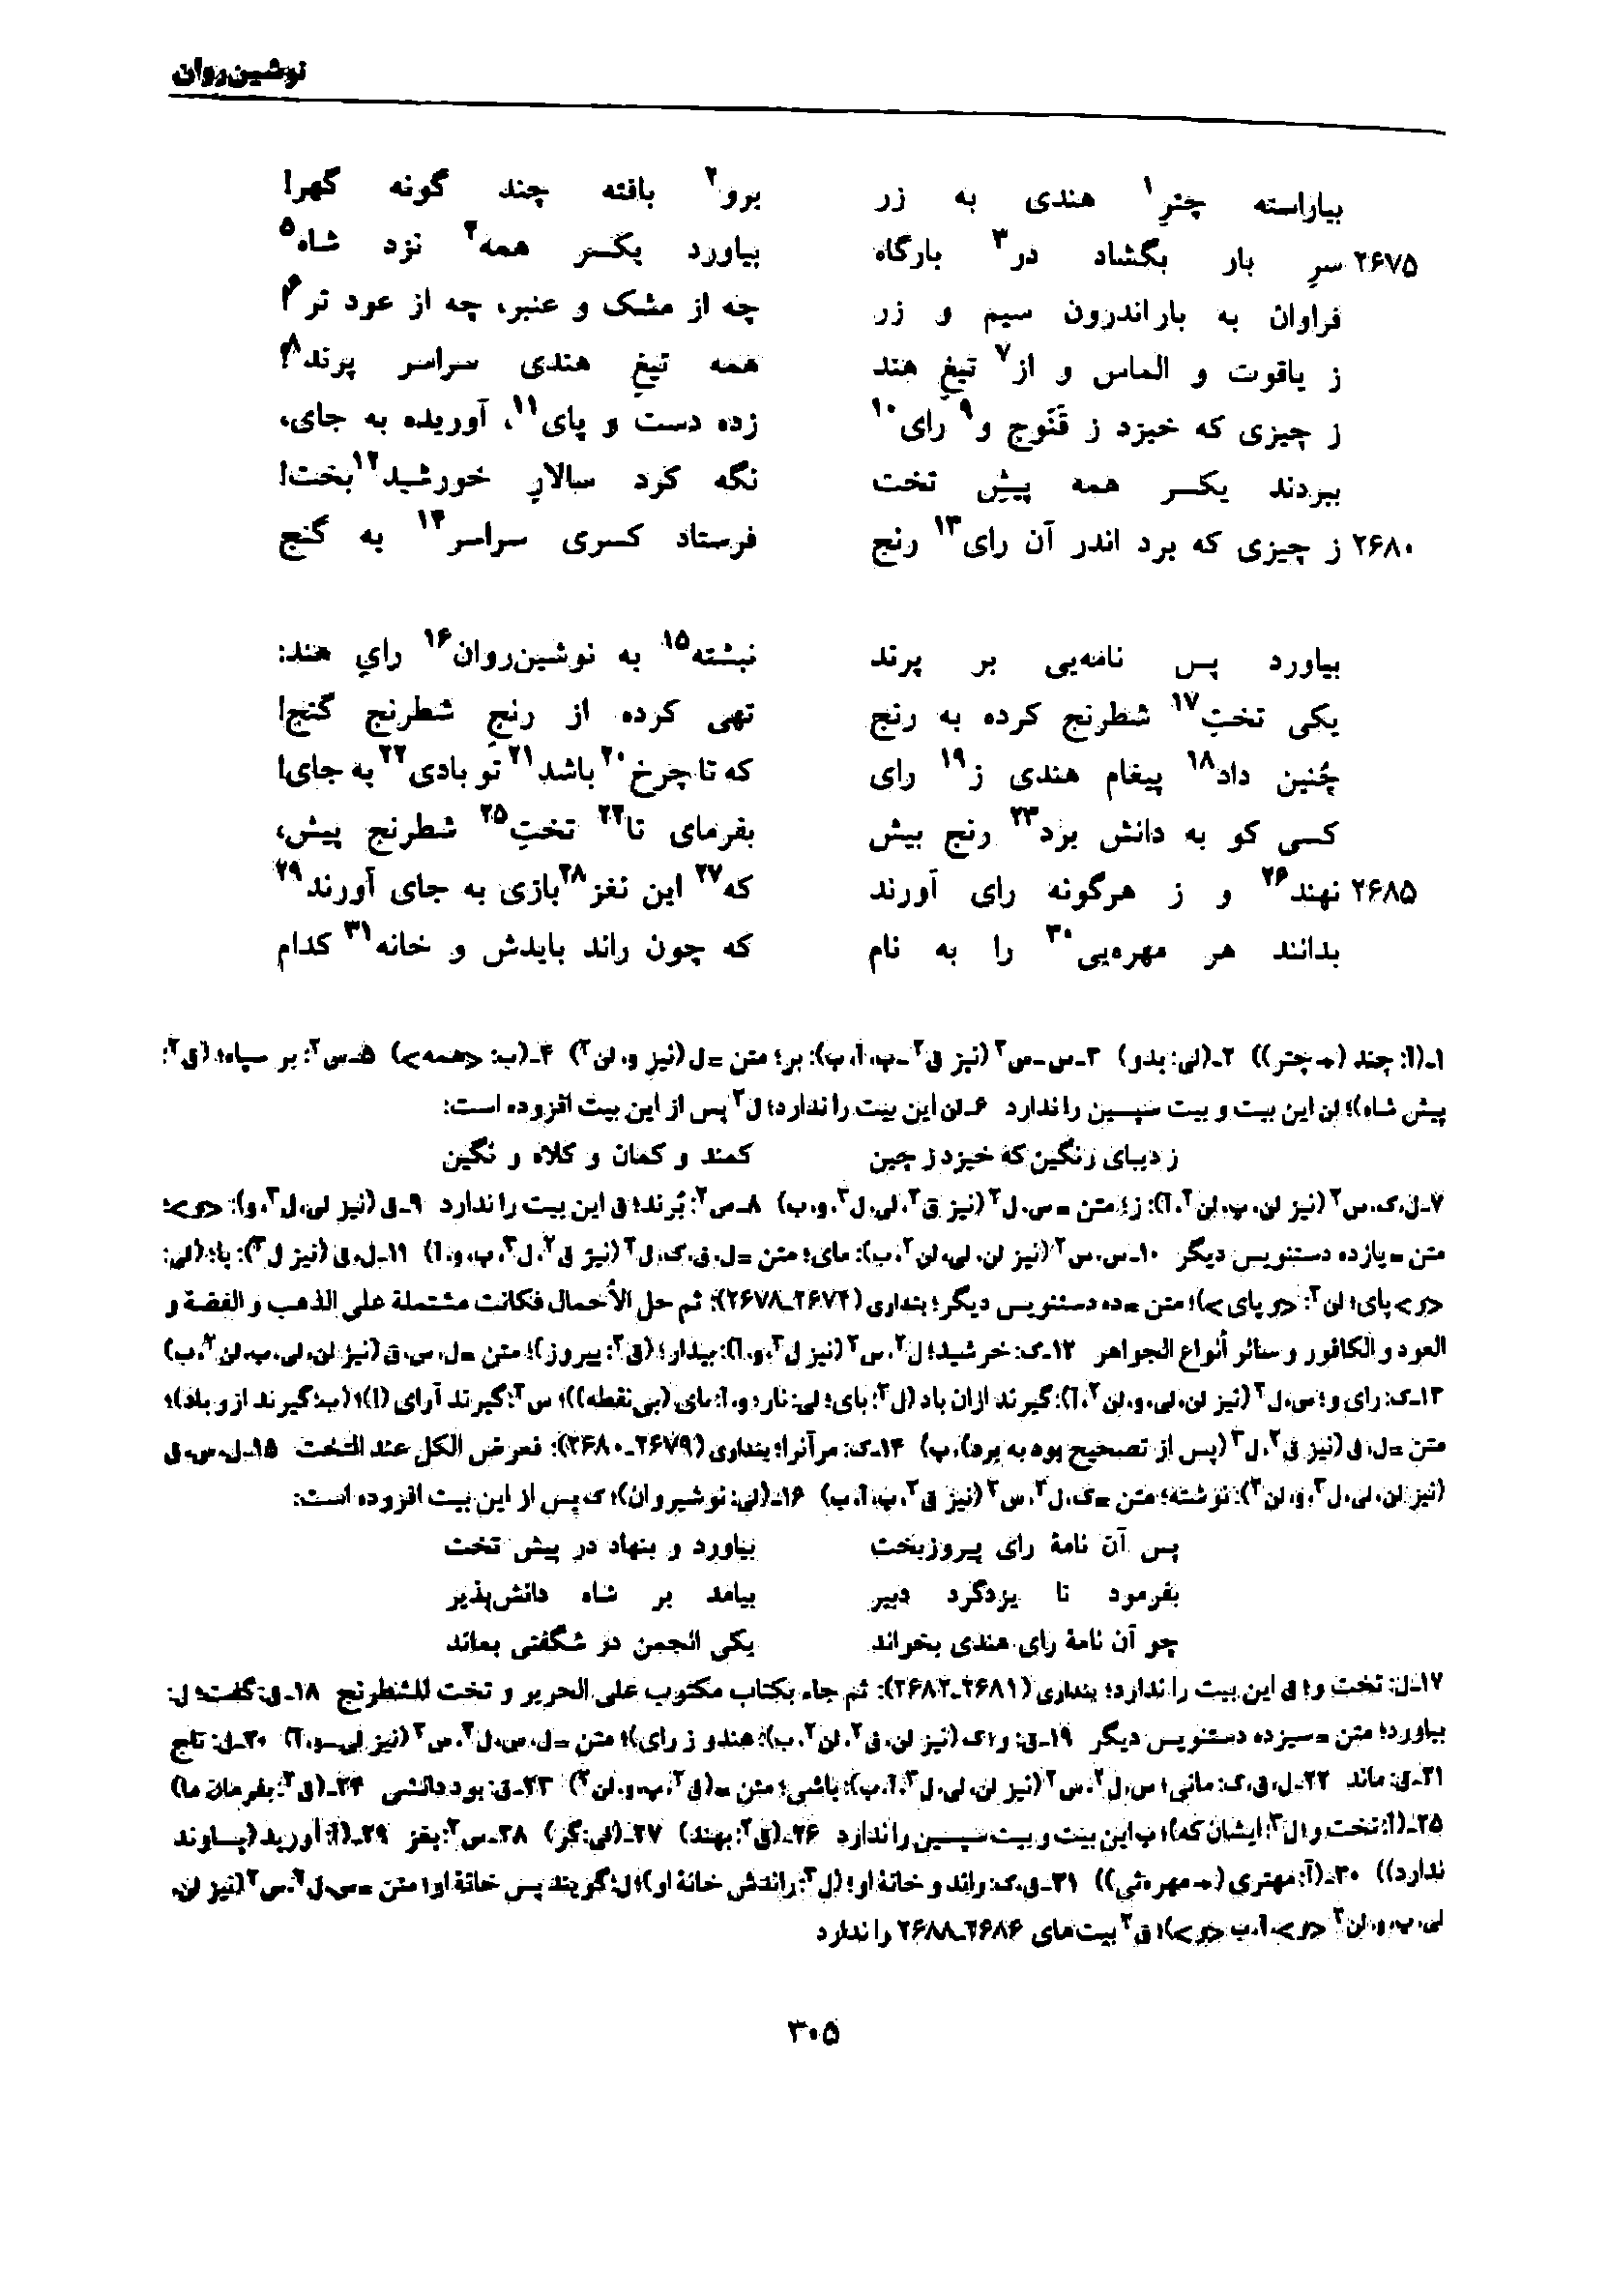 vol. 7, p. 305